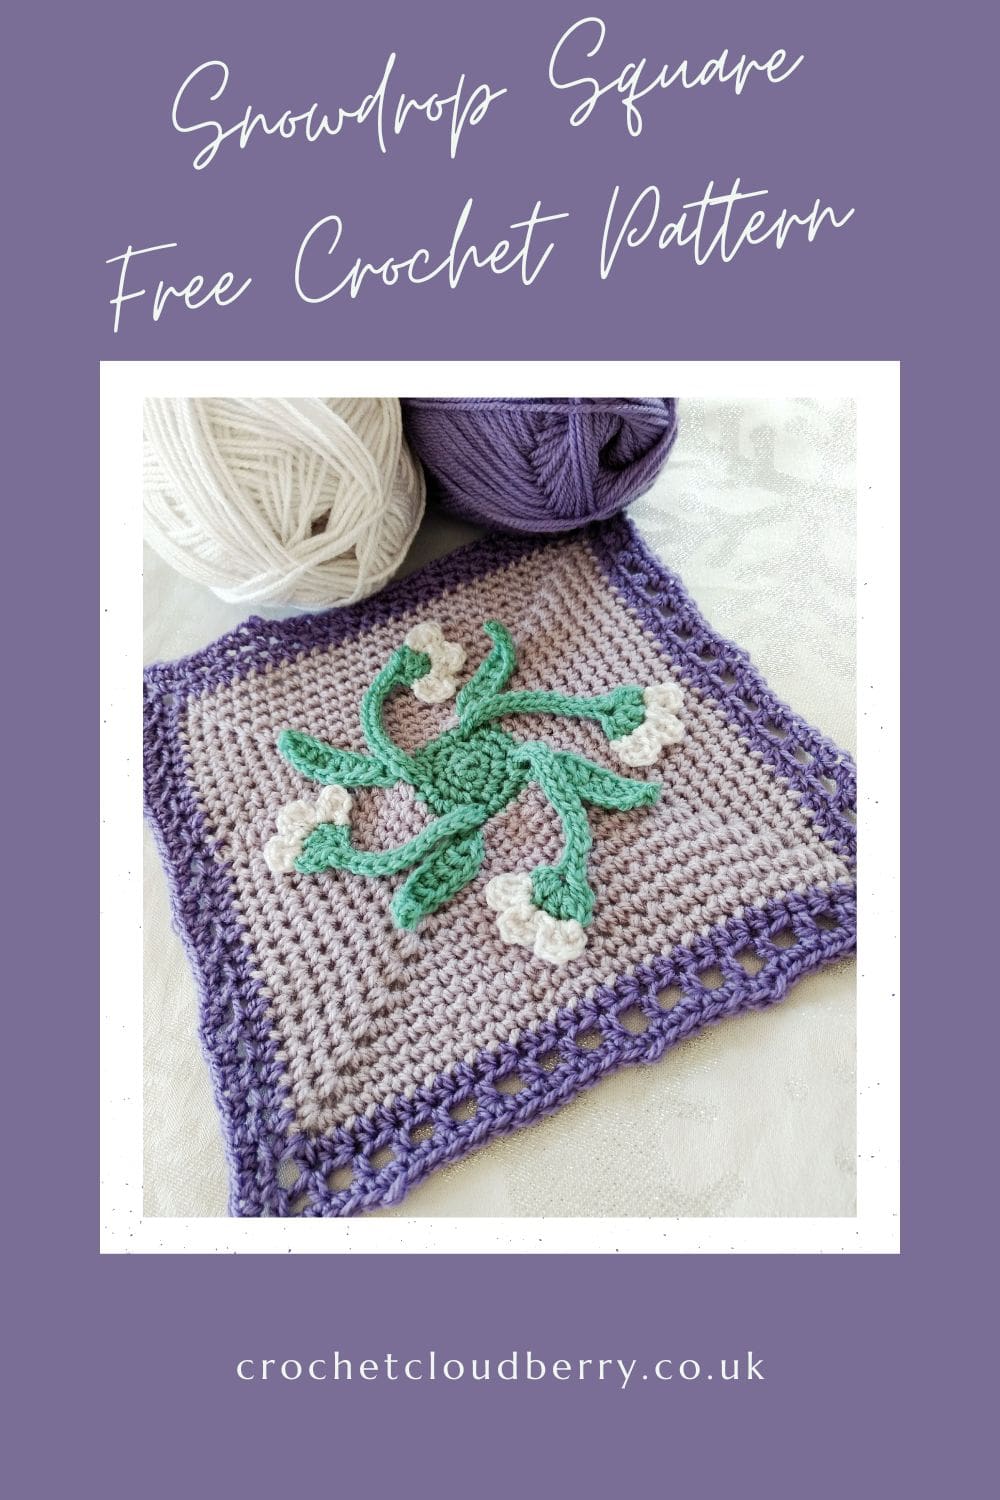 2023 Crochet Blanket - free crochet pattern - February crochet square - Snowdrop Crochet Square - Crochet Cloudberry